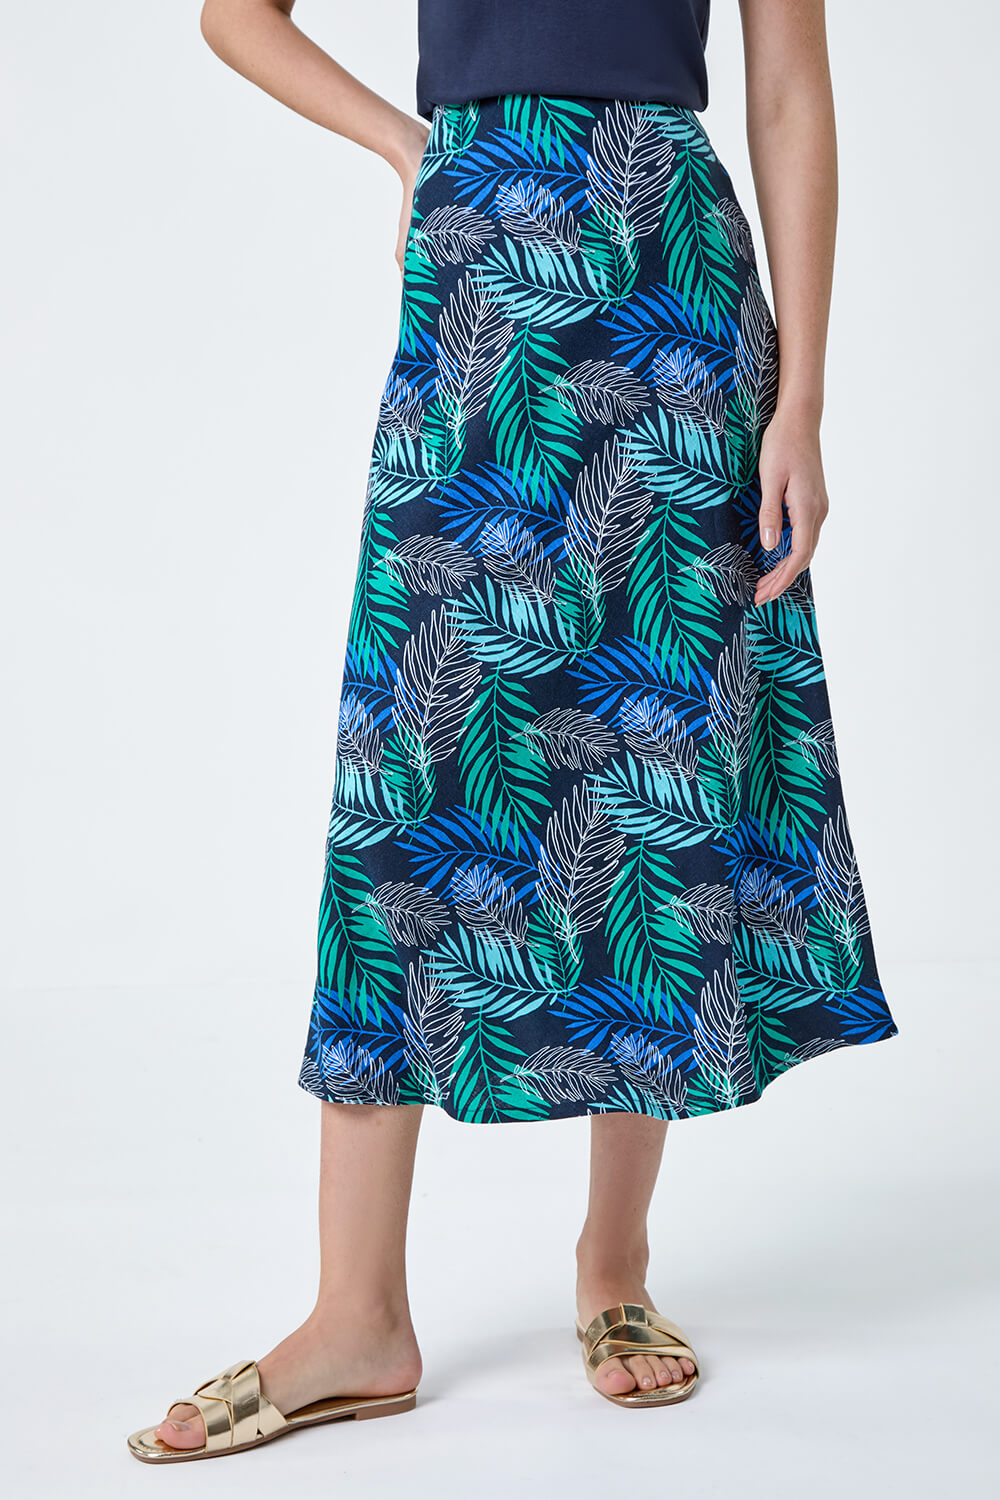 Blue Leaf Print Linen Blend A-Line Skirt, Image 4 of 5